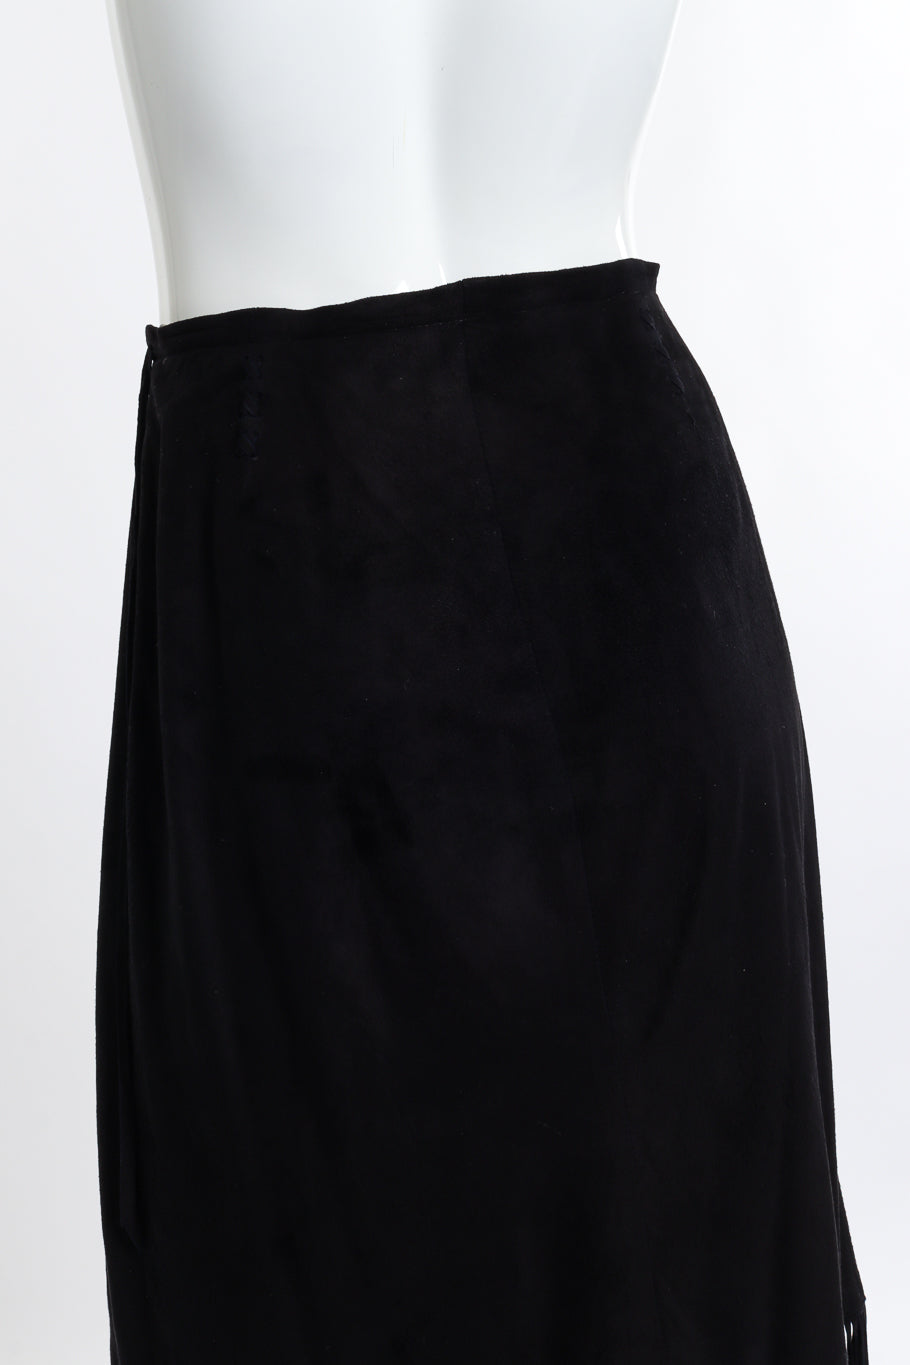 Vintage Char & Sher Microsuede Fringe Wrap Skirt back on mannequin closeup @recess la